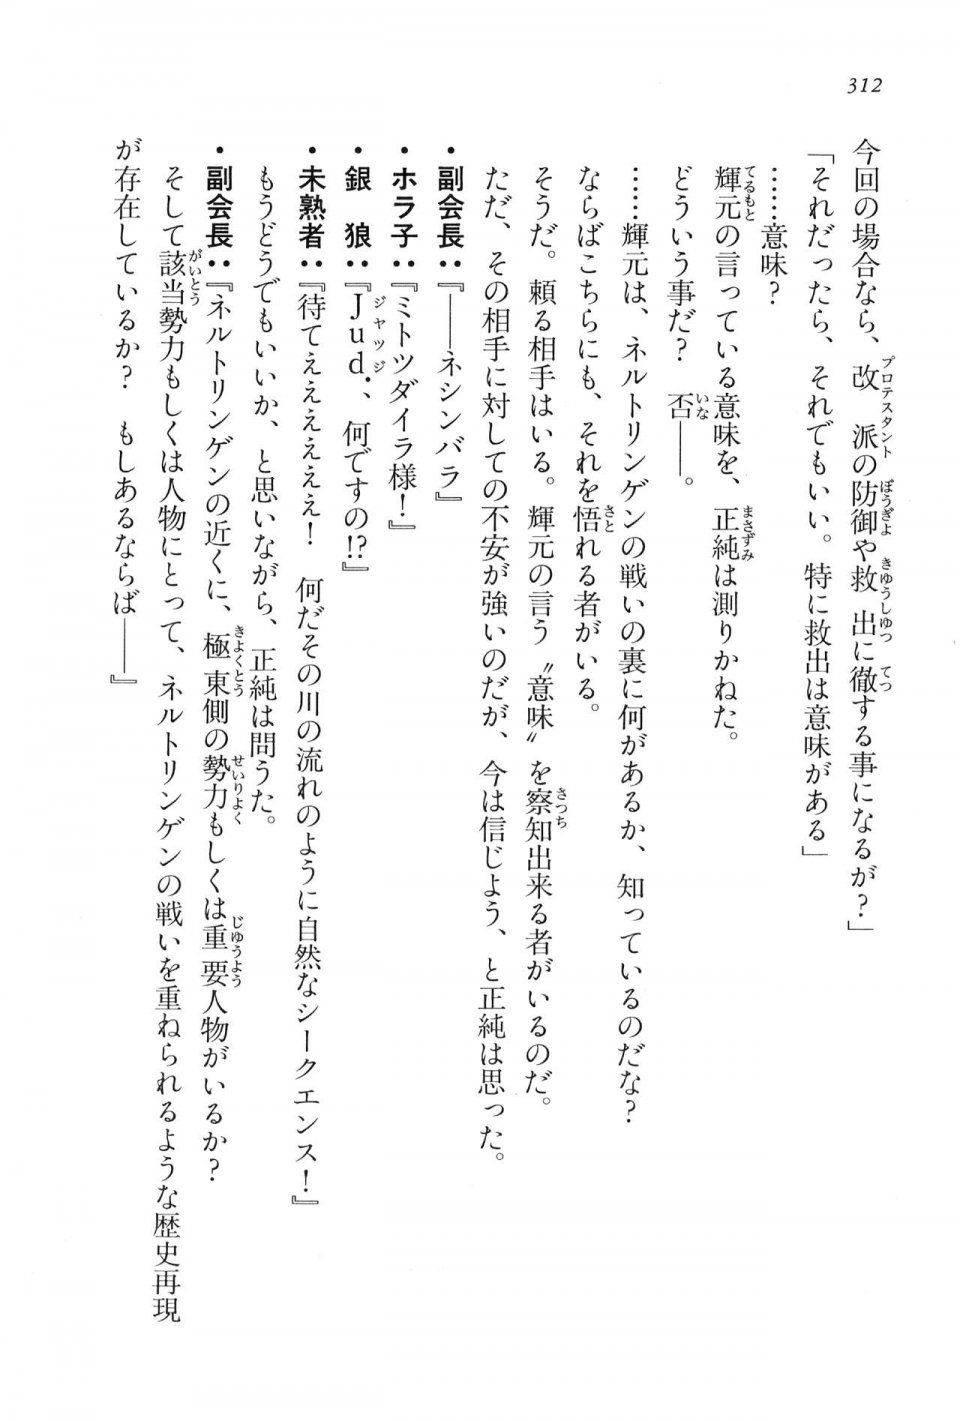 Kyoukai Senjou no Horizon LN Vol 16(7A) - Photo #312